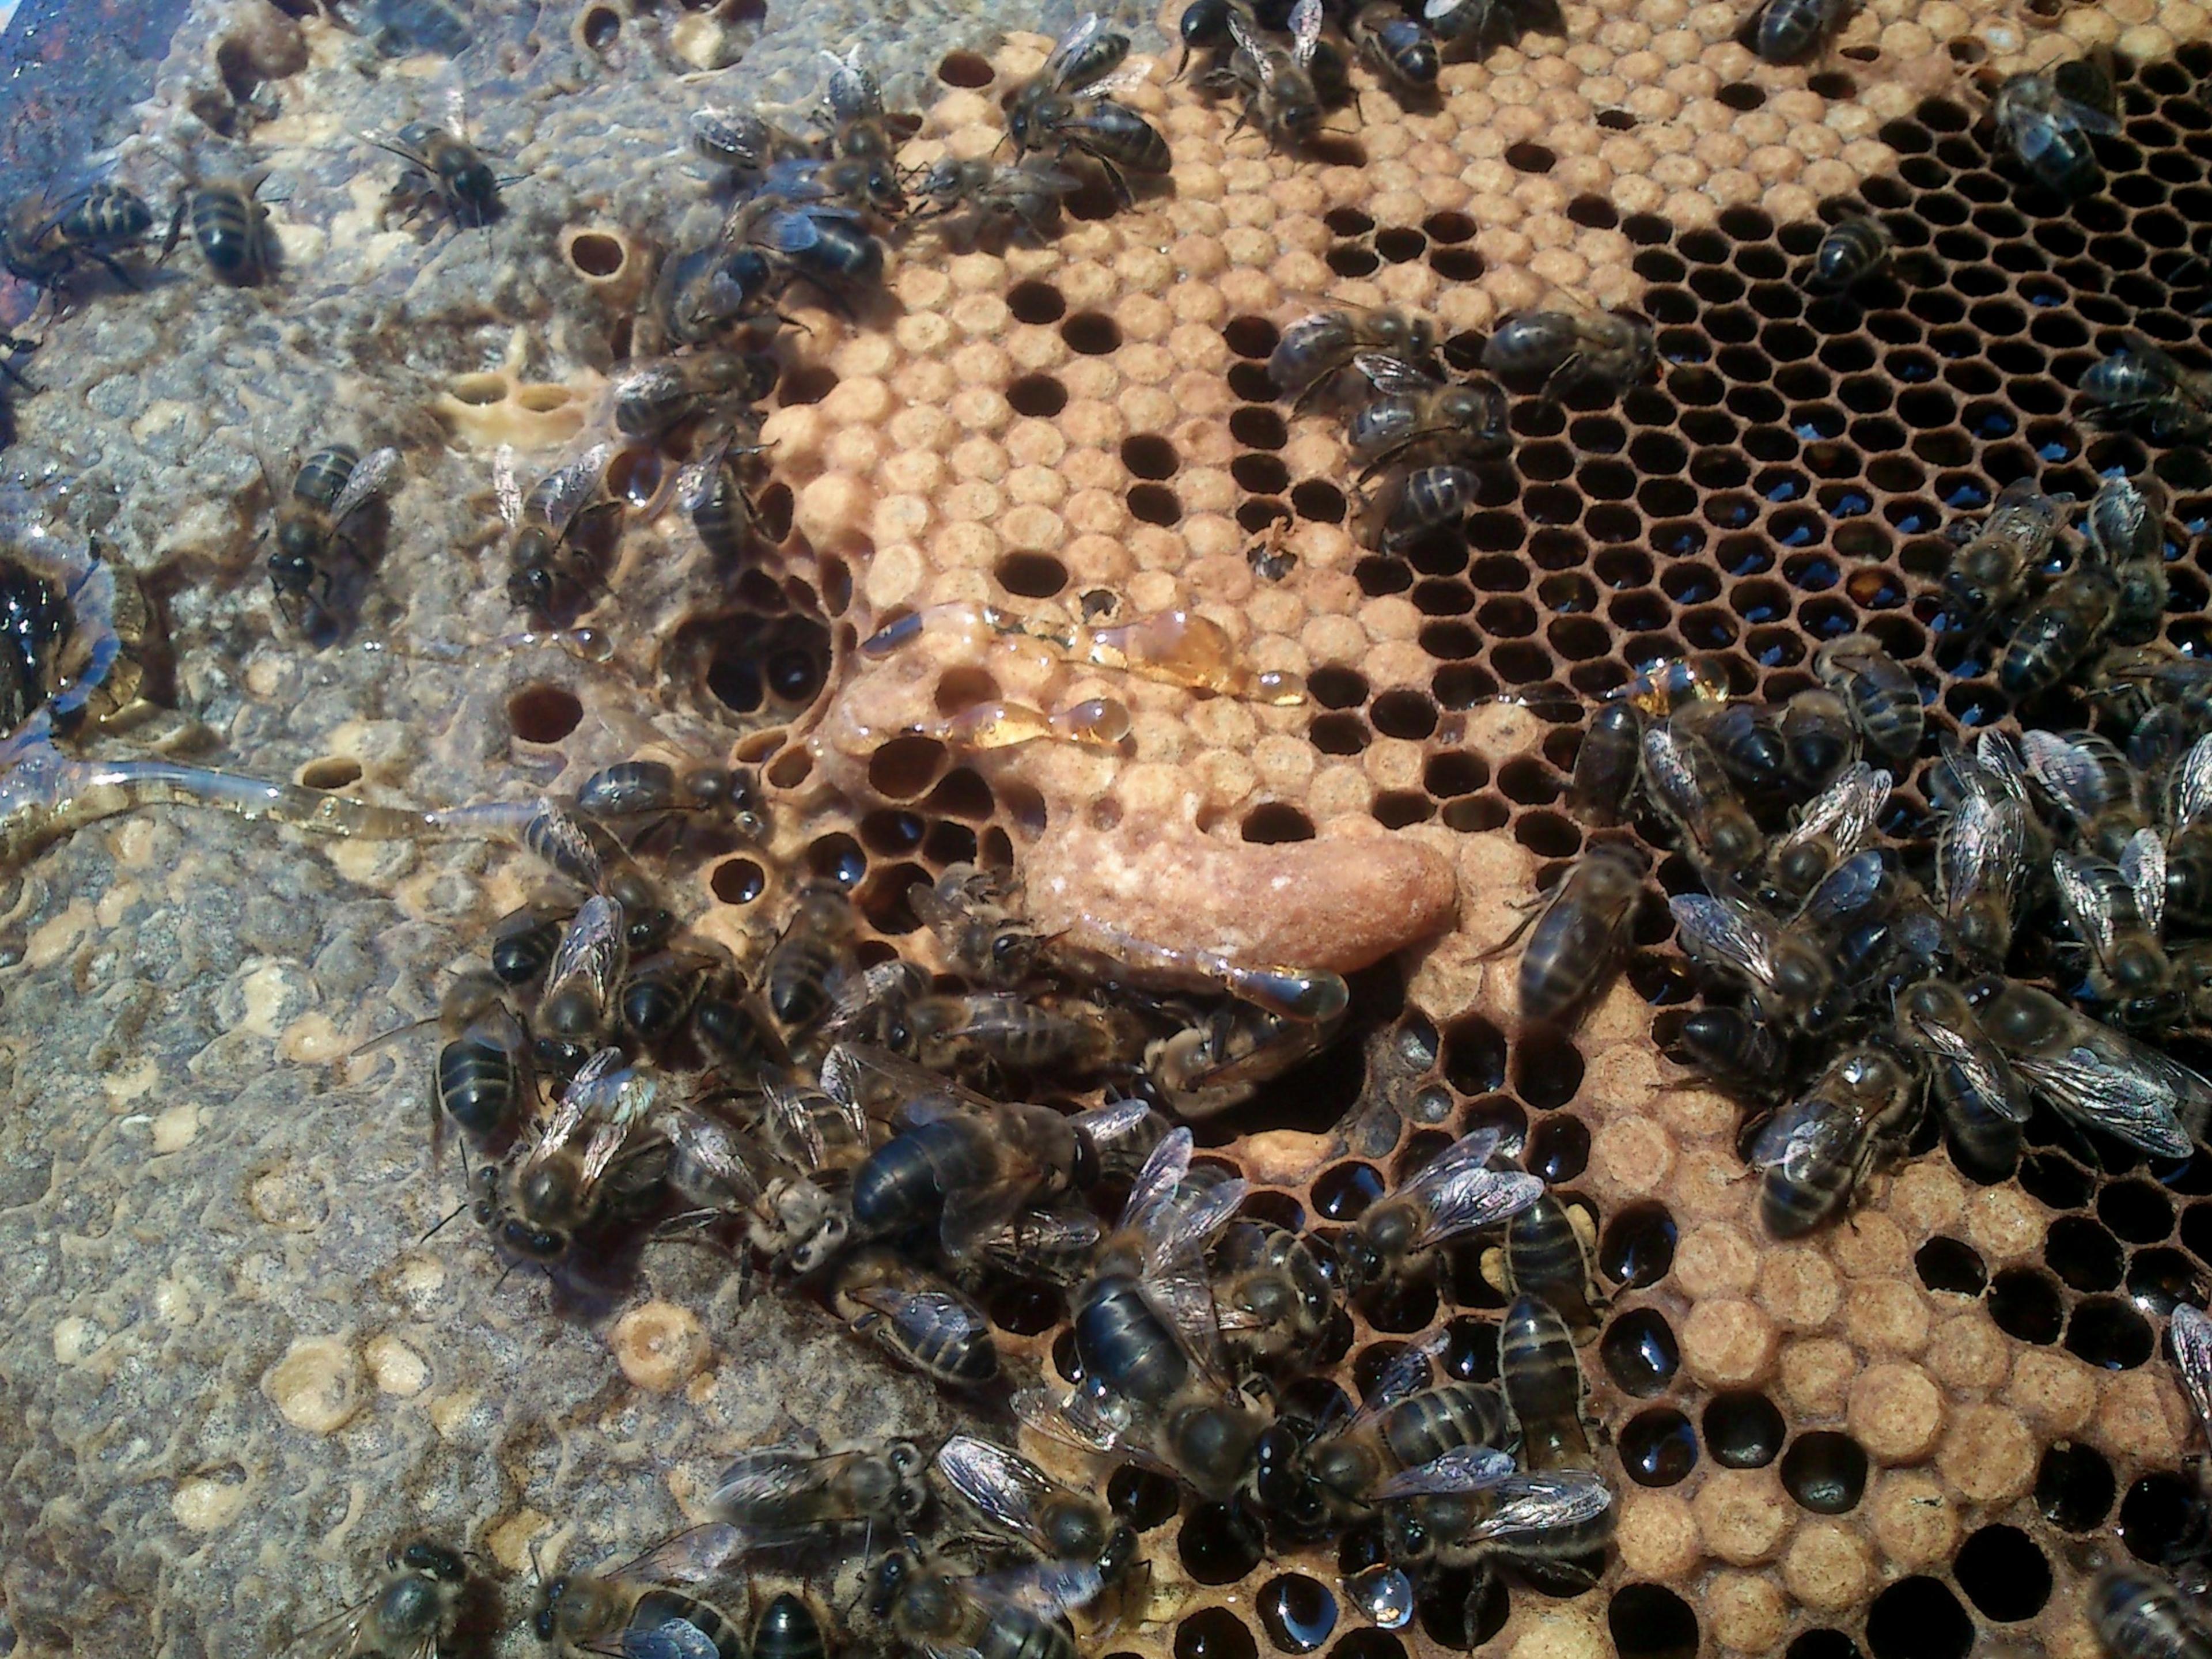 Els apicultors reclamen tenir més arnes en espais naturals i tràmits de transport i identificació més simples